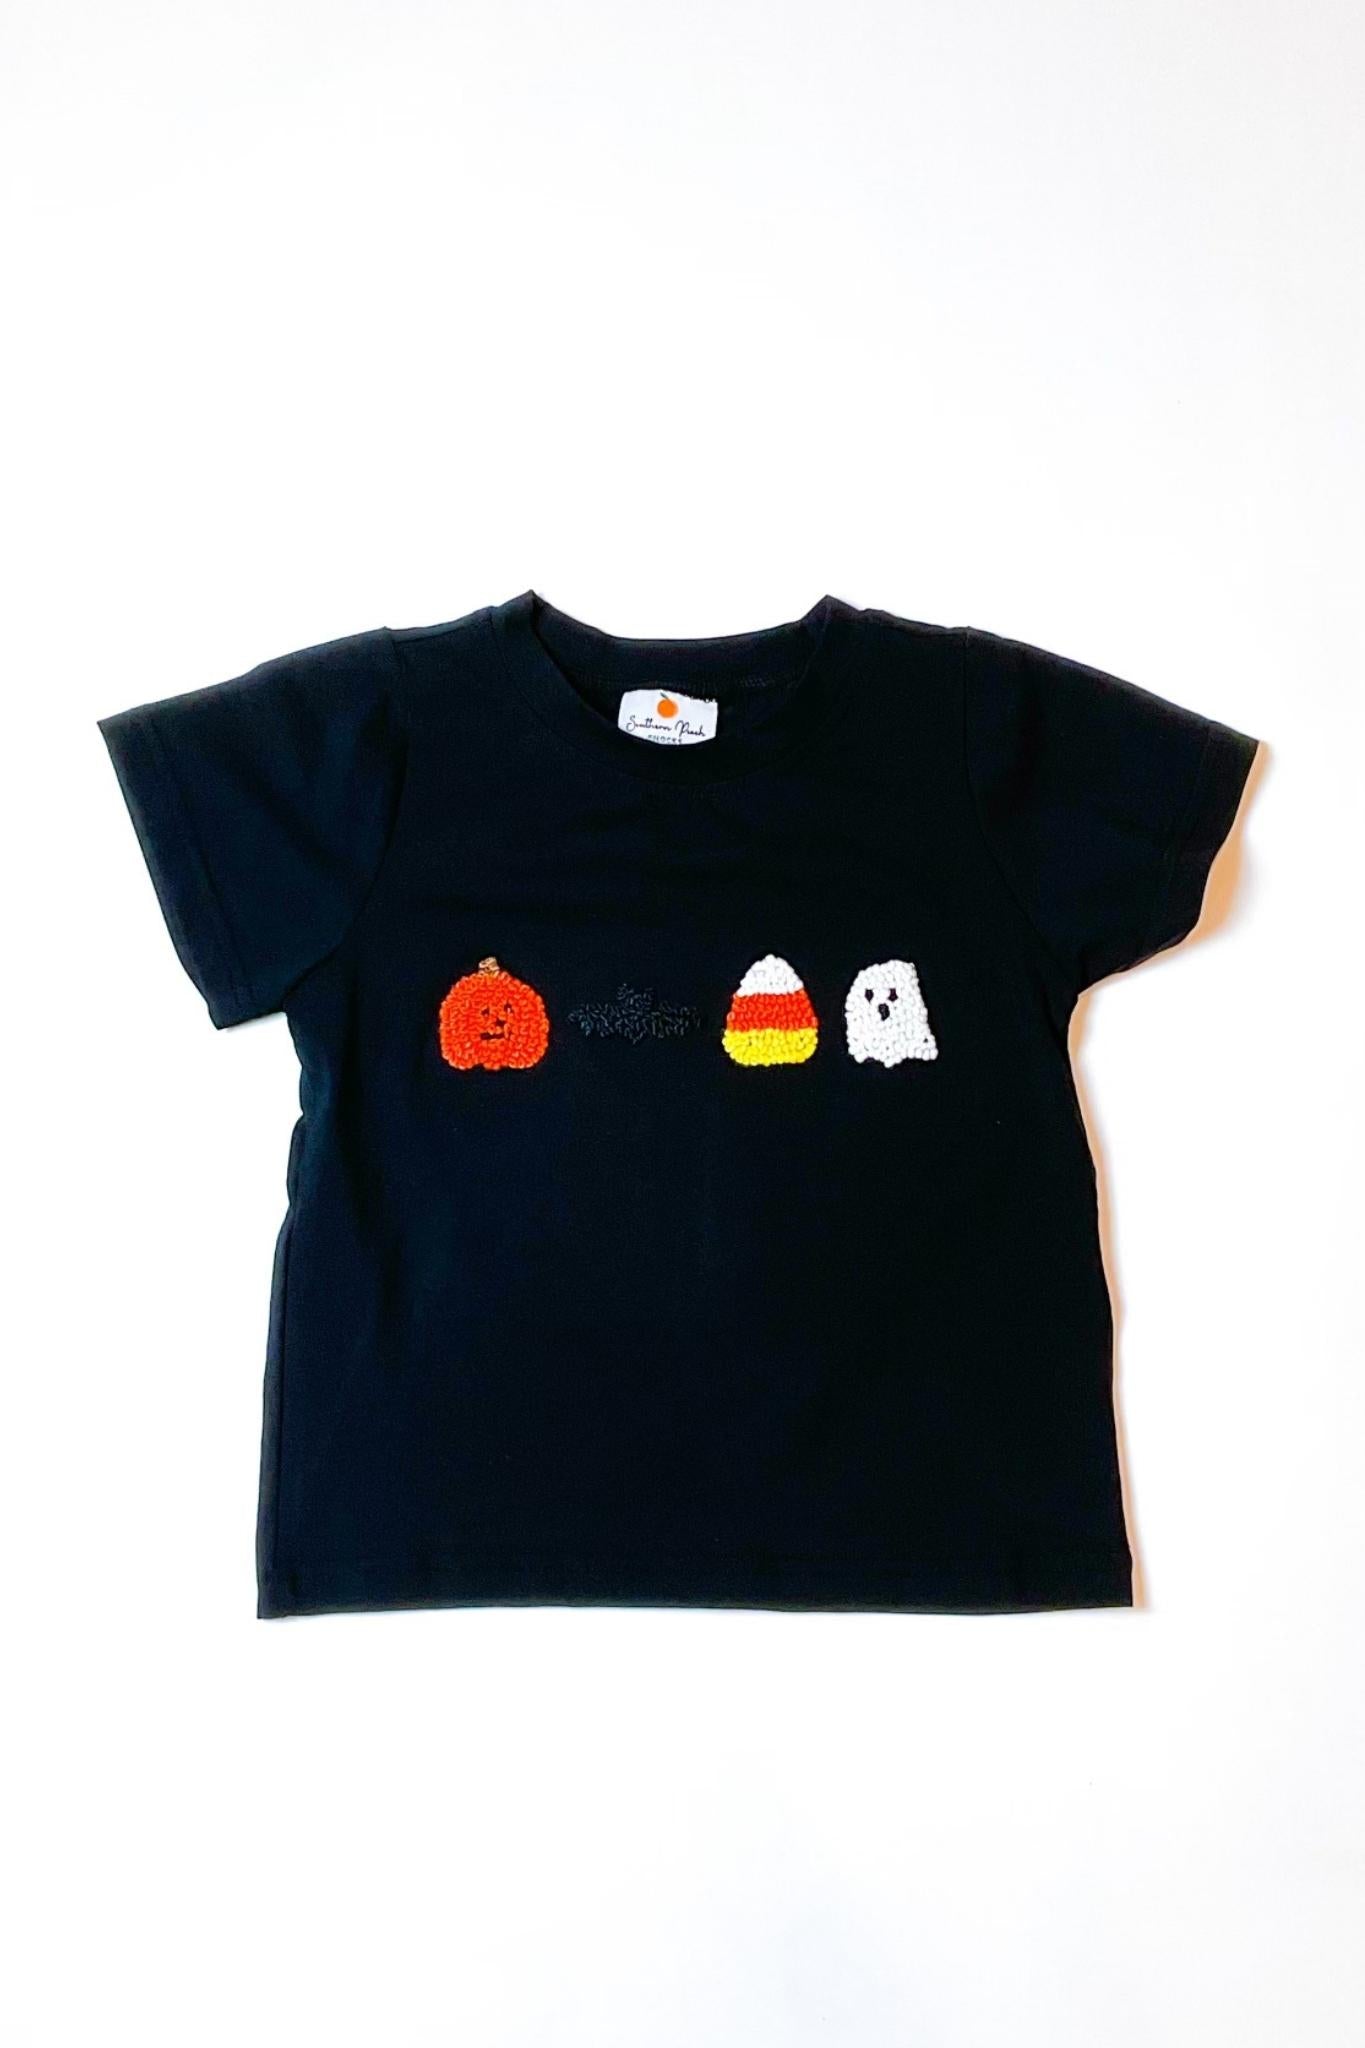 Boy's Halloween T-shirt (shirt only)